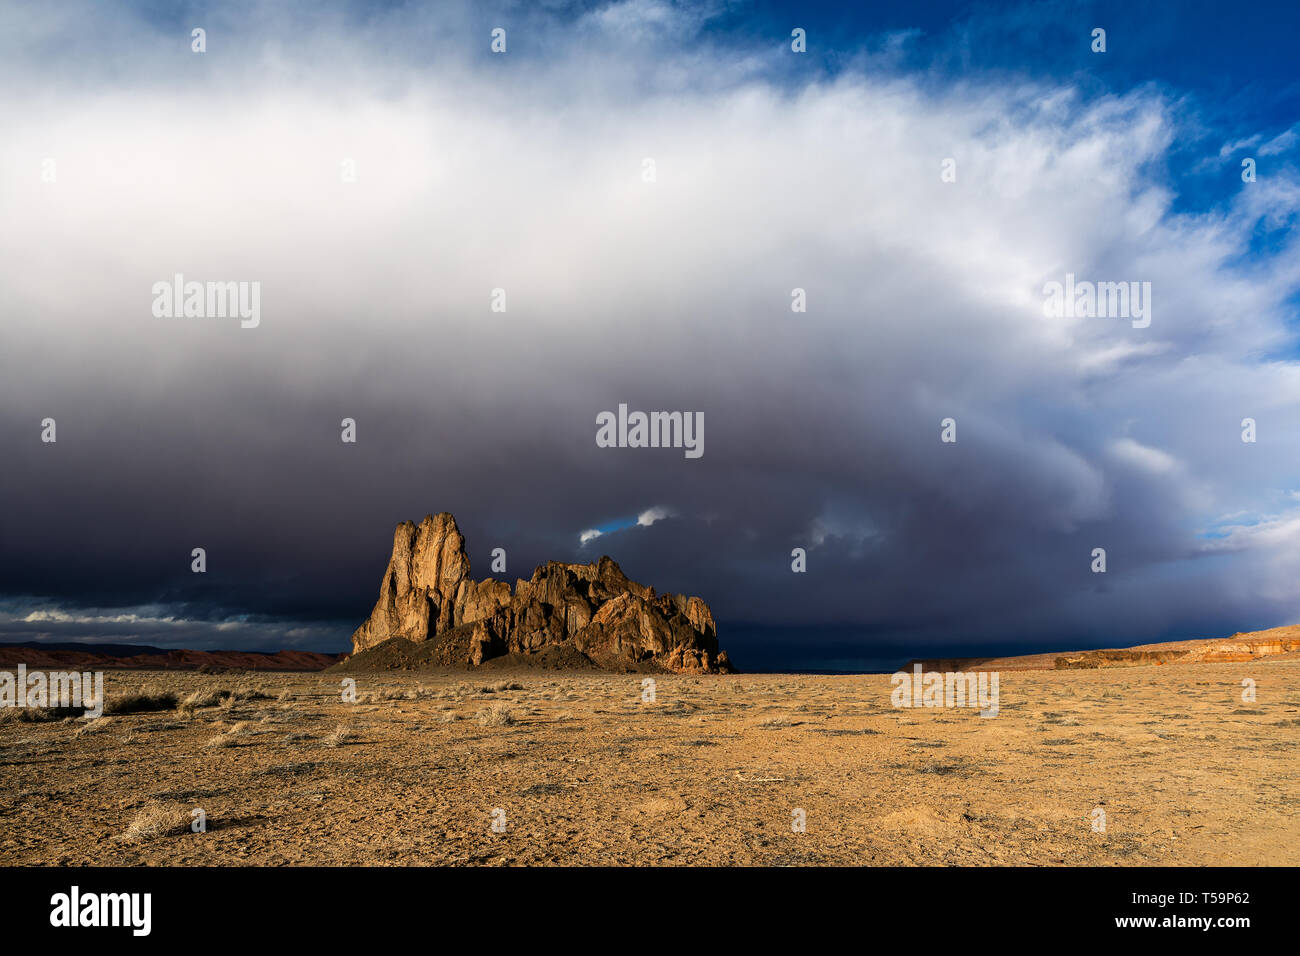 Paisaje escénico del desierto occidental con espectaculares nubes y cielo sobre formaciones rocosas volcánicas en Monument Valley, Arizona, Estados Unidos Foto de stock